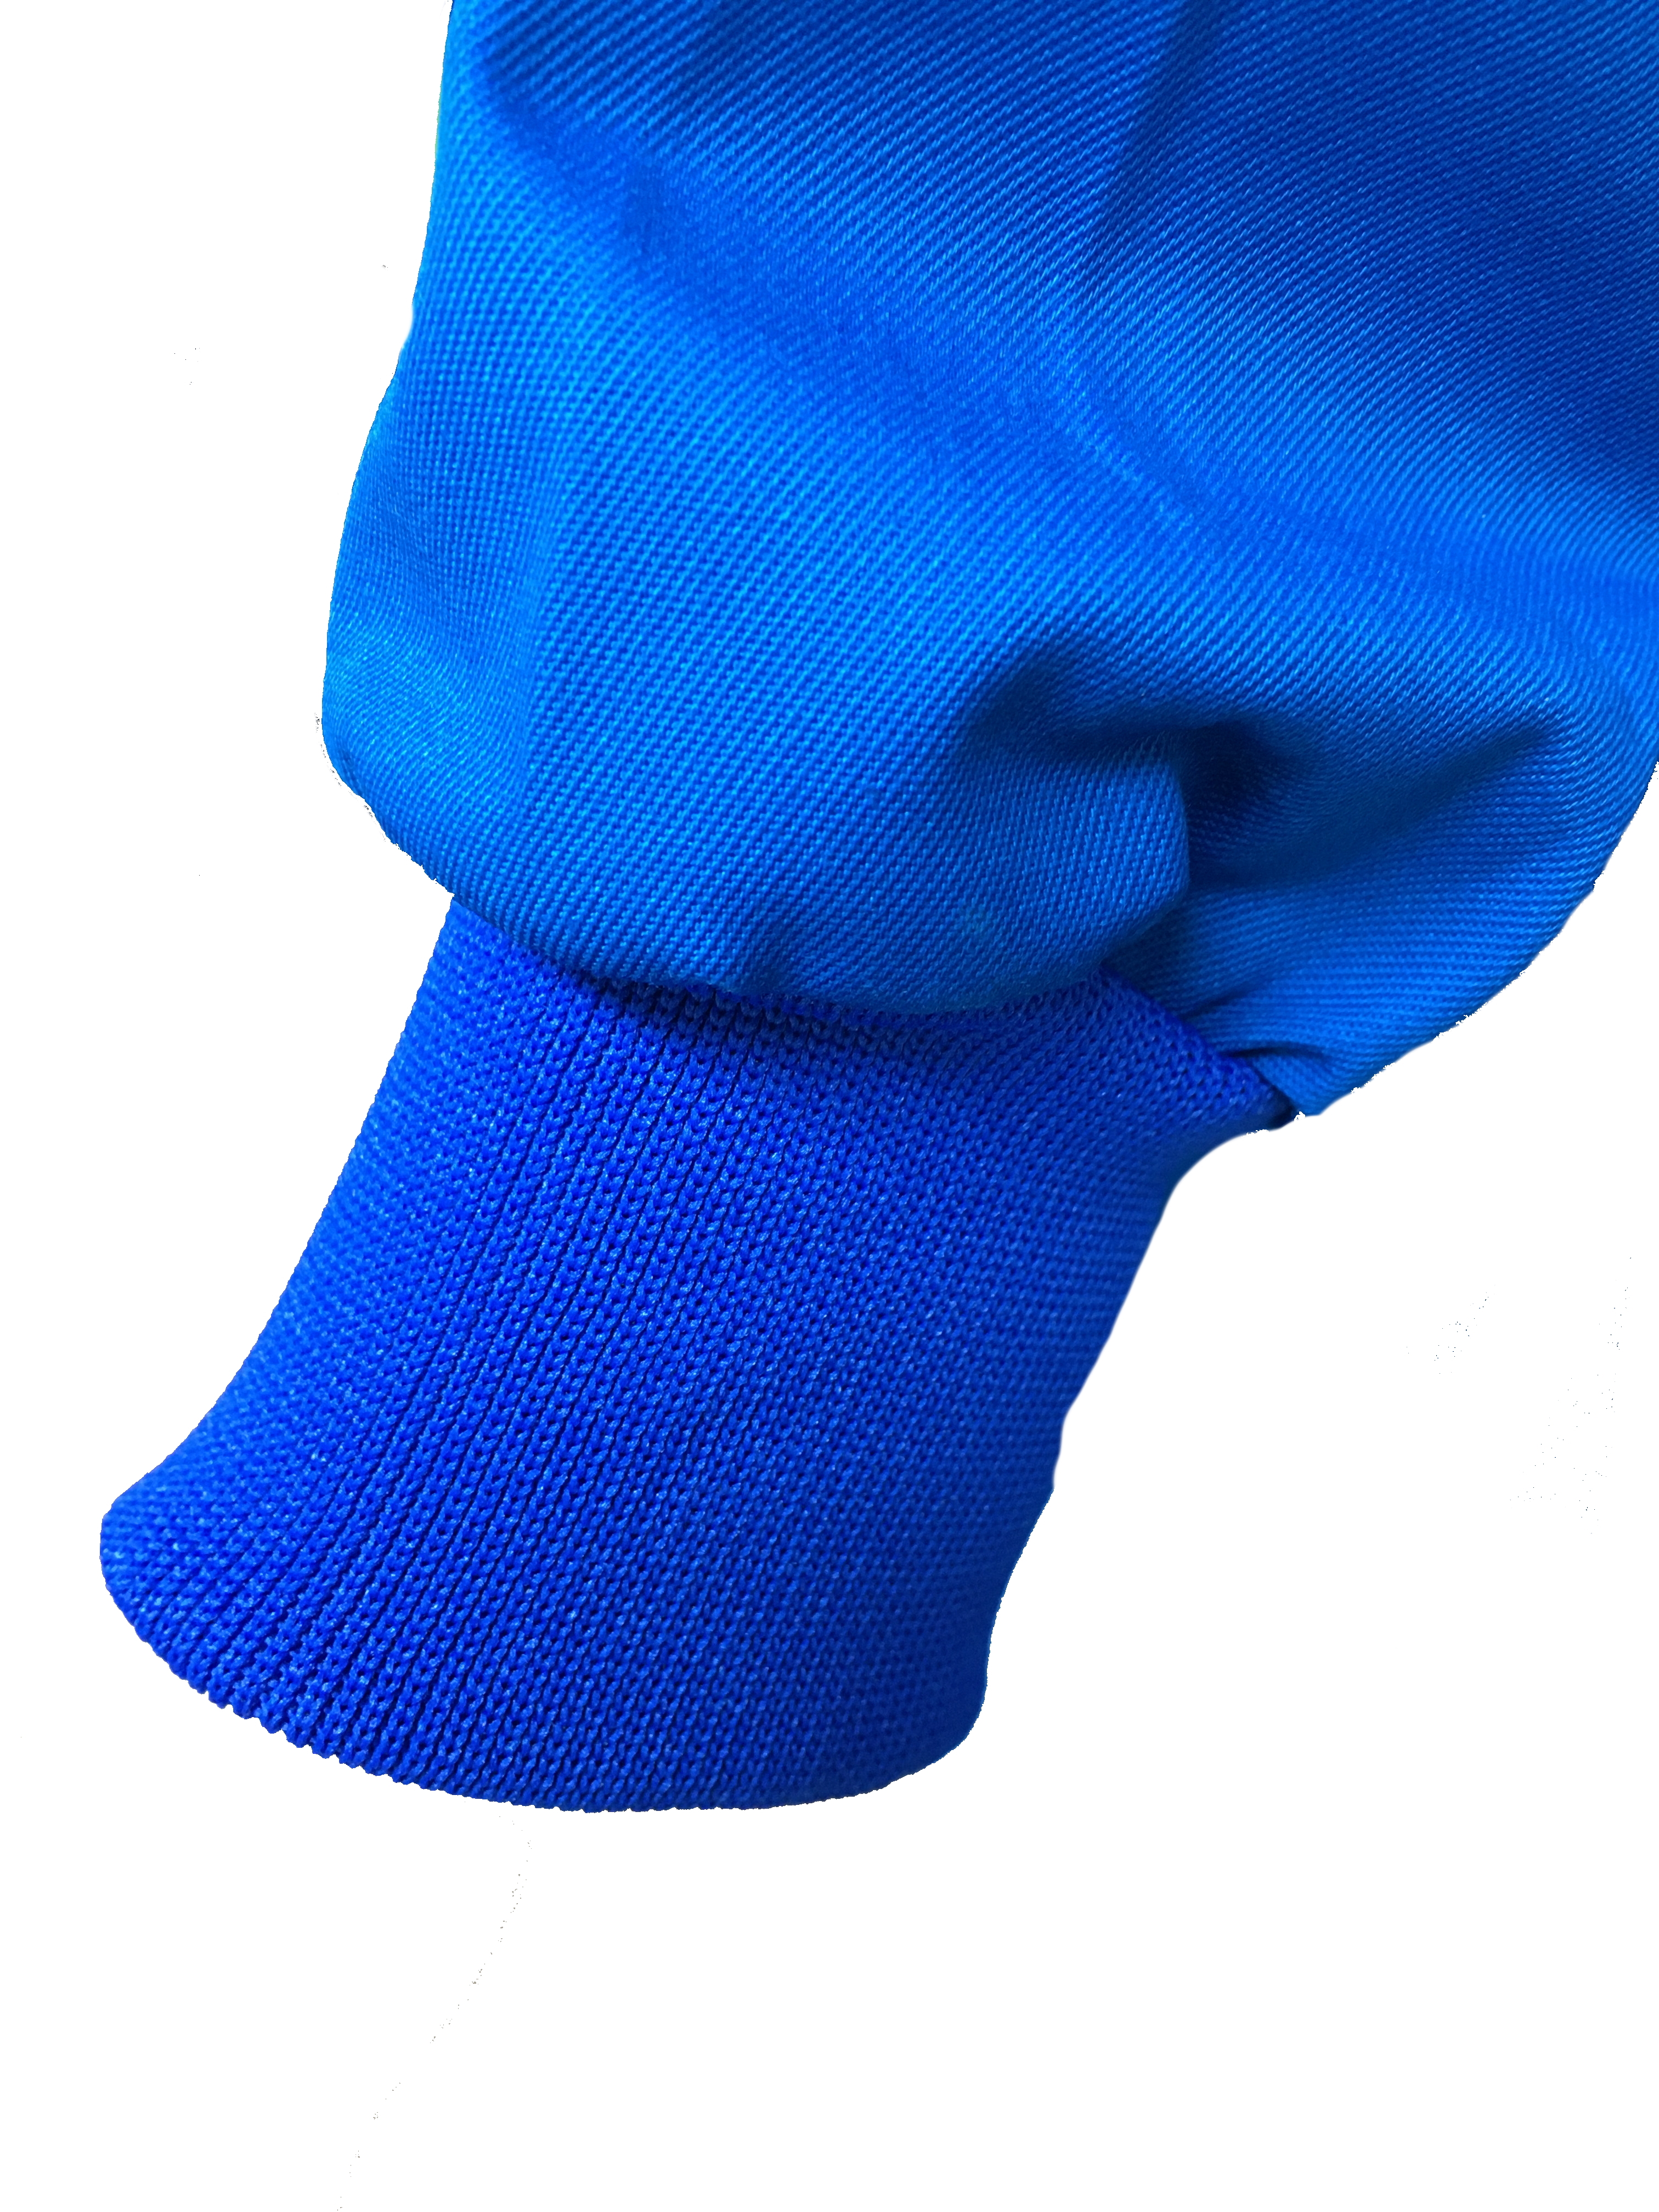 Wickelmantel 65% Polyester/35% Baumwolle blau mit Druckknöpfen